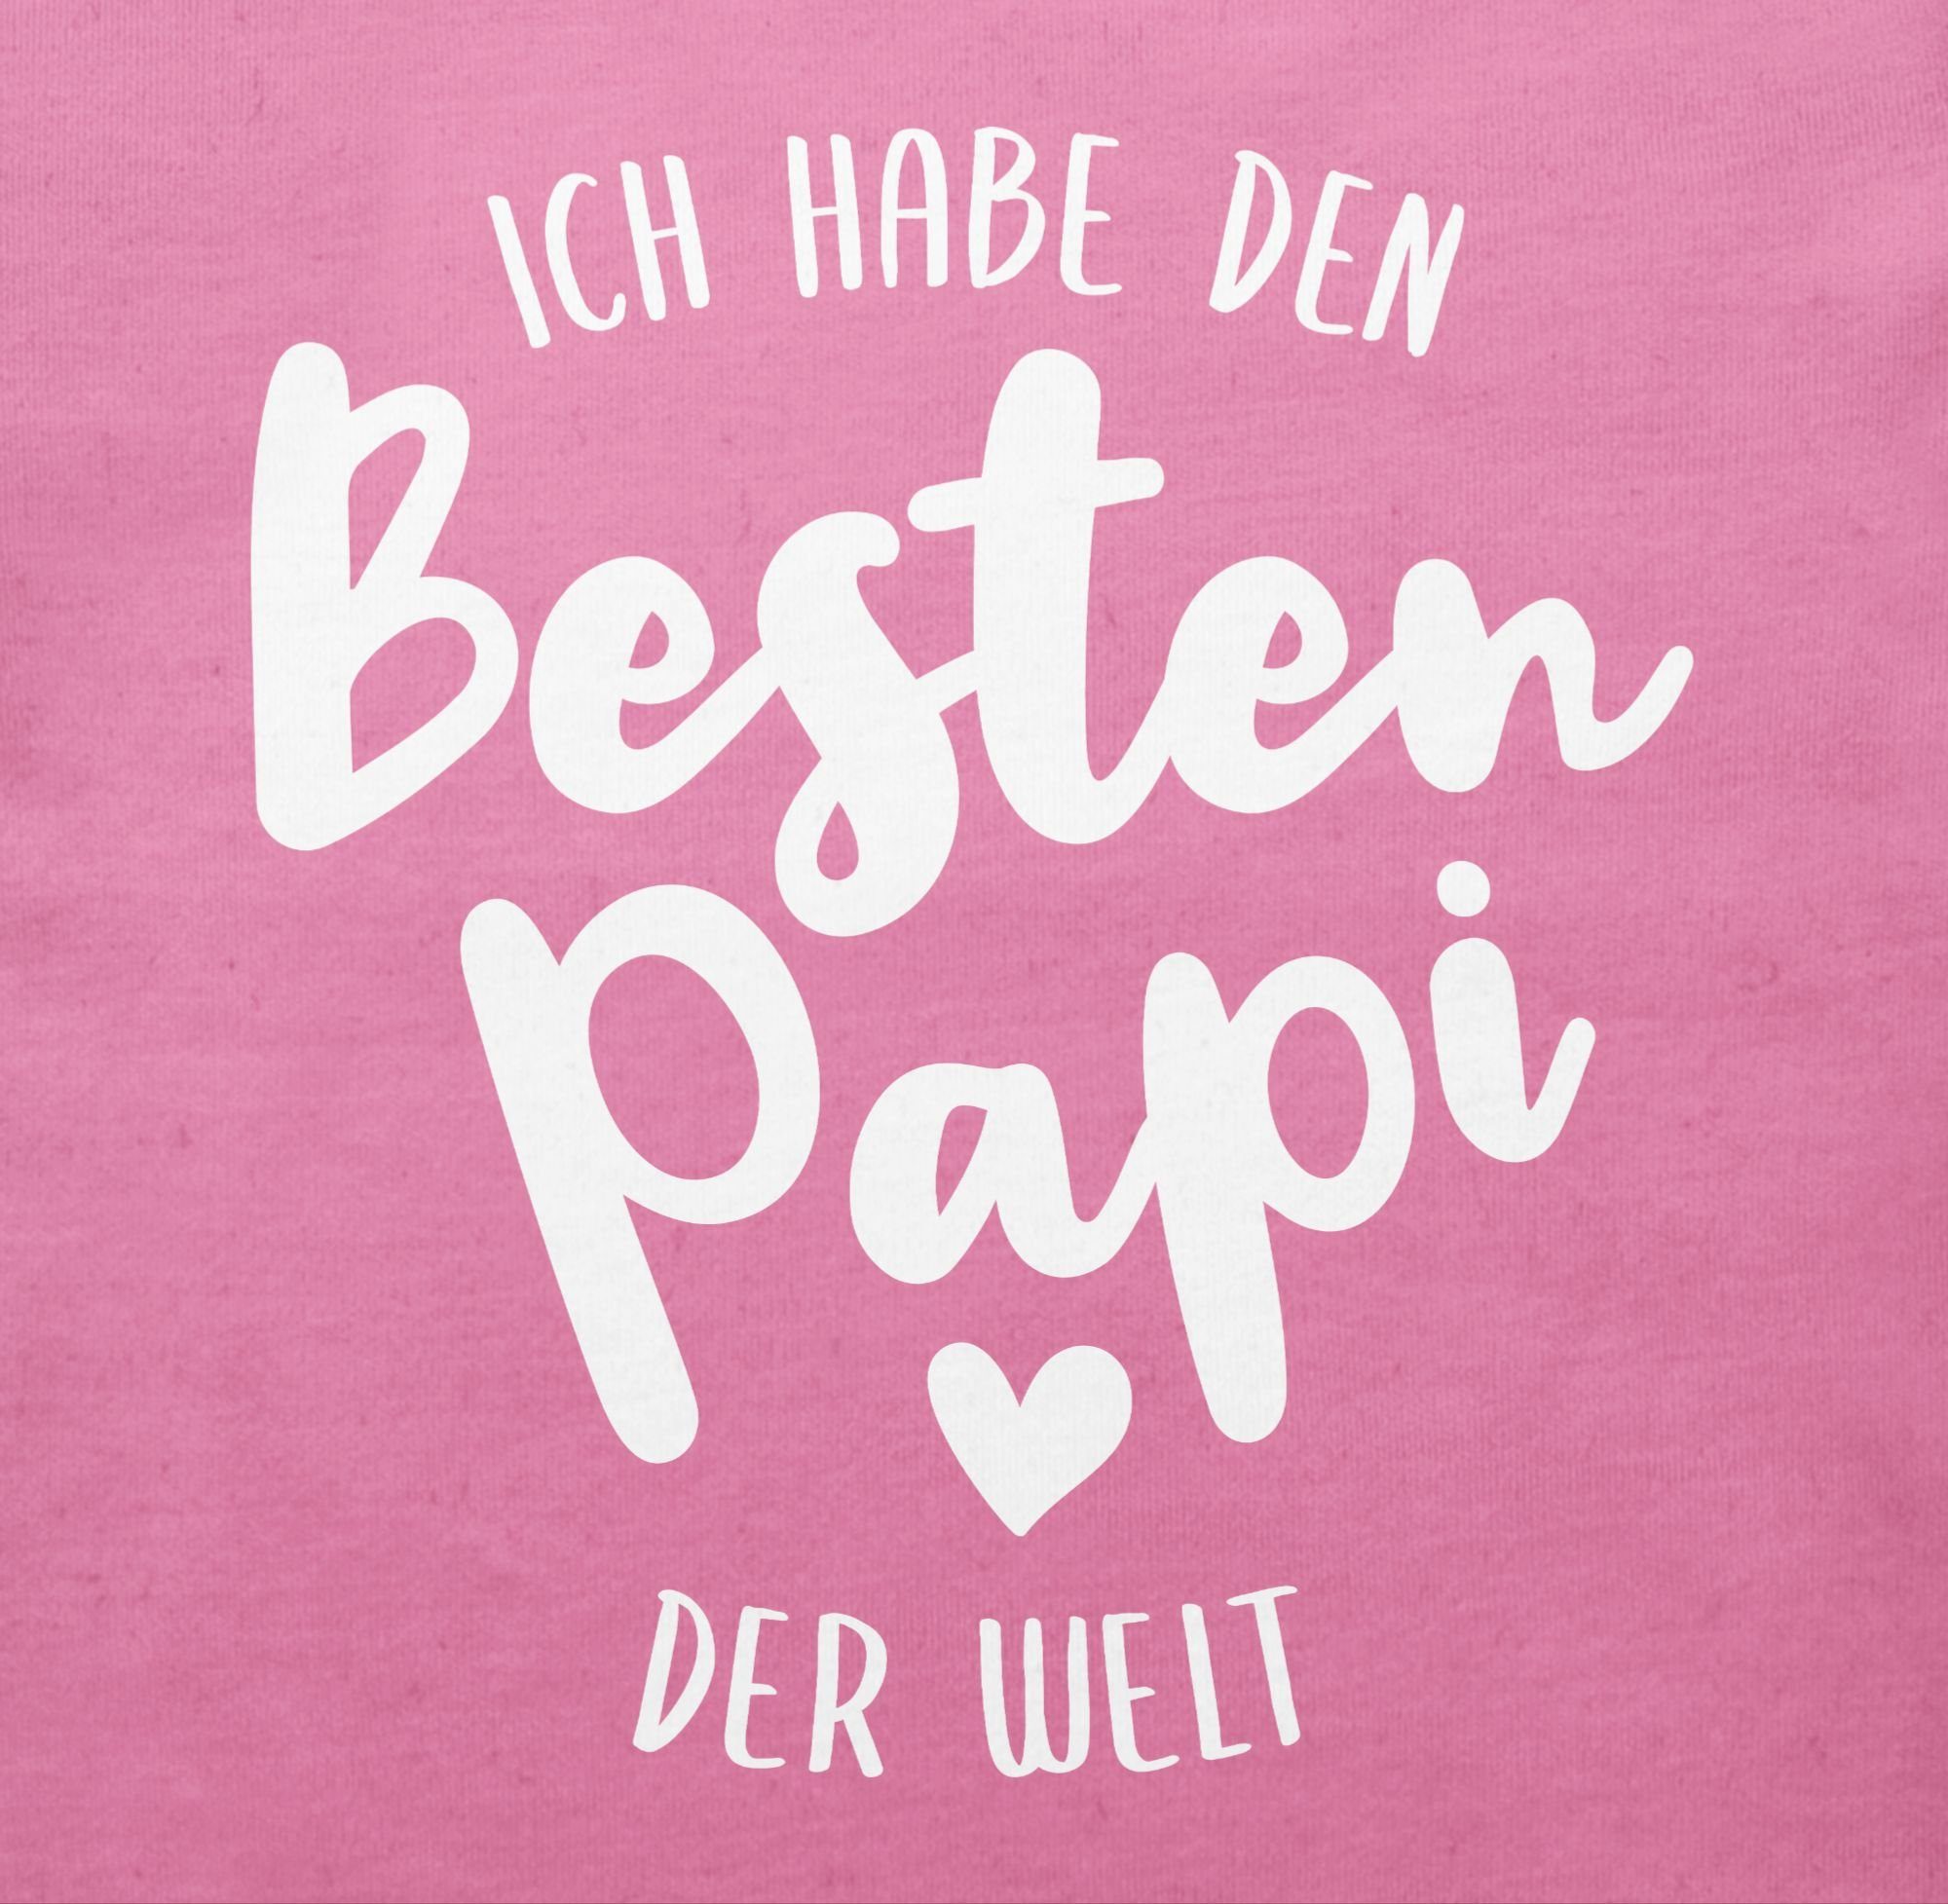 Shirtracer T-Shirt Ich habe den & Baby besten Junge der Pink Papi 3 Strampler Mädchen Welt